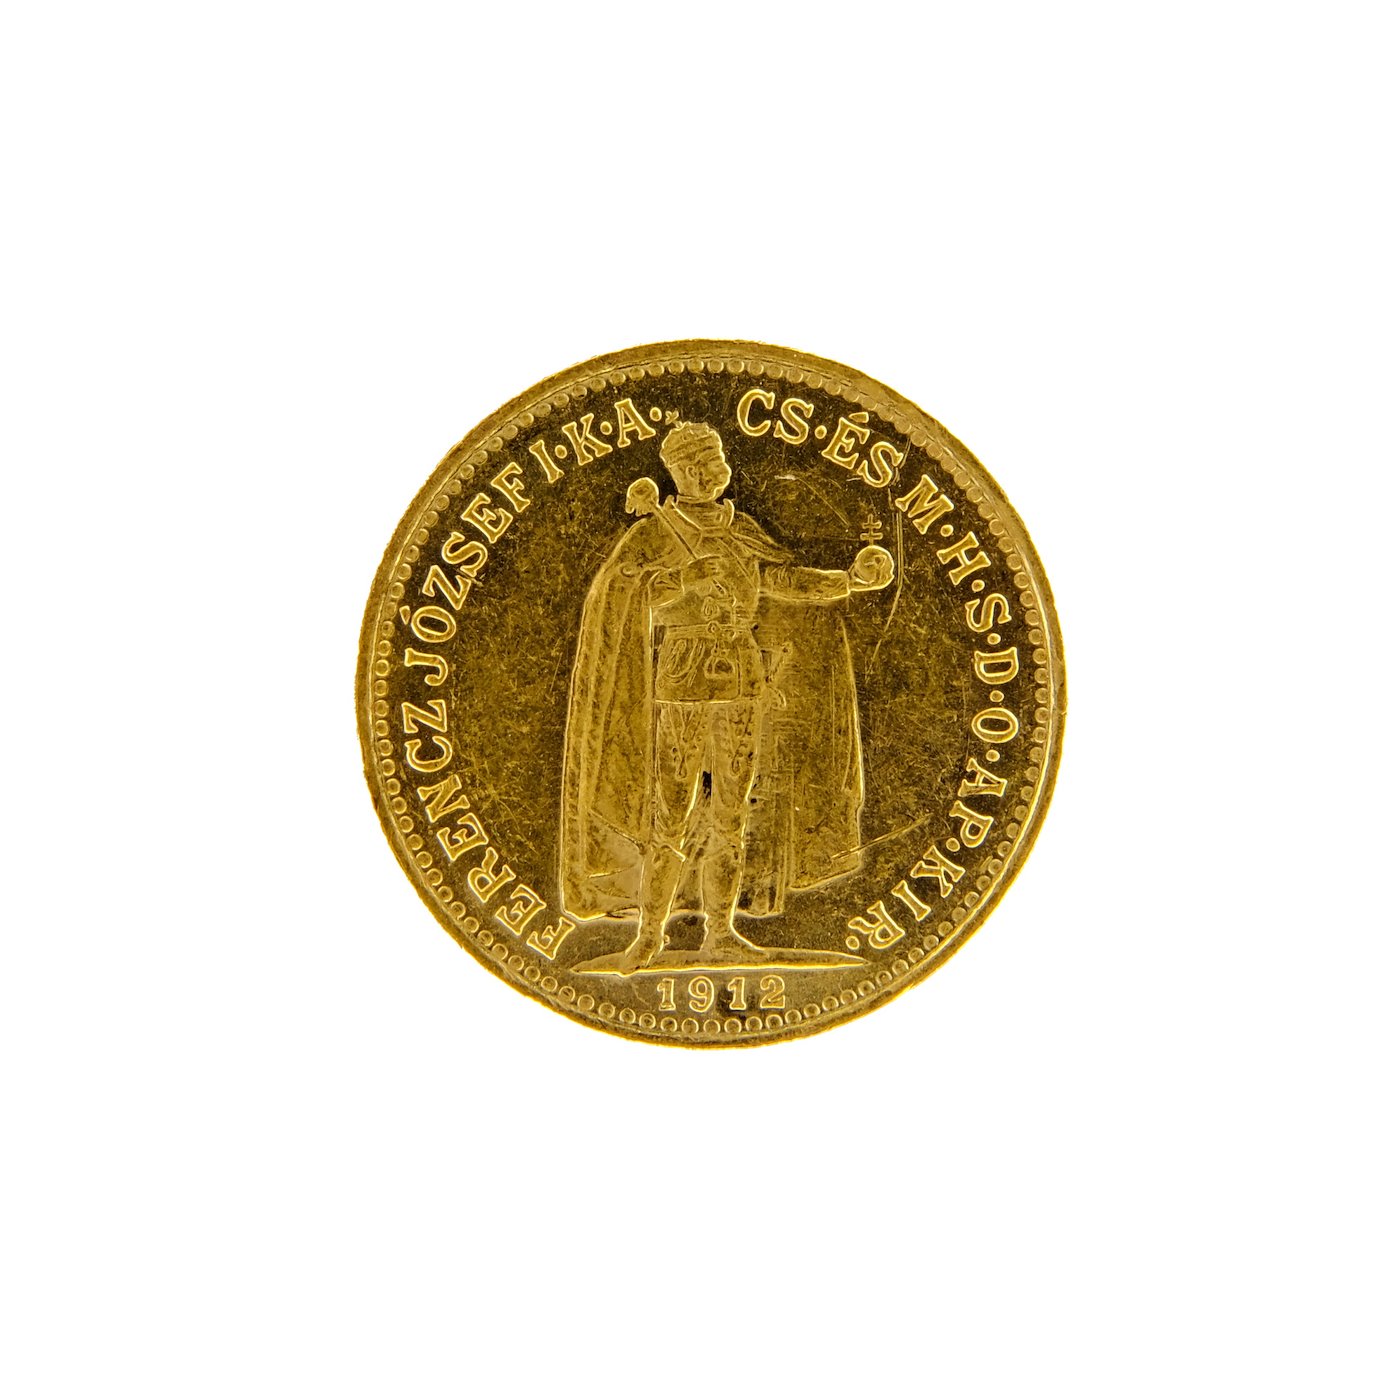 Mince - Rakousko Uhersko zlatá 10 Koruna 1912 K.B.  uherská. Zlato 900/1000, hrubá hmotnost mince 3,387g